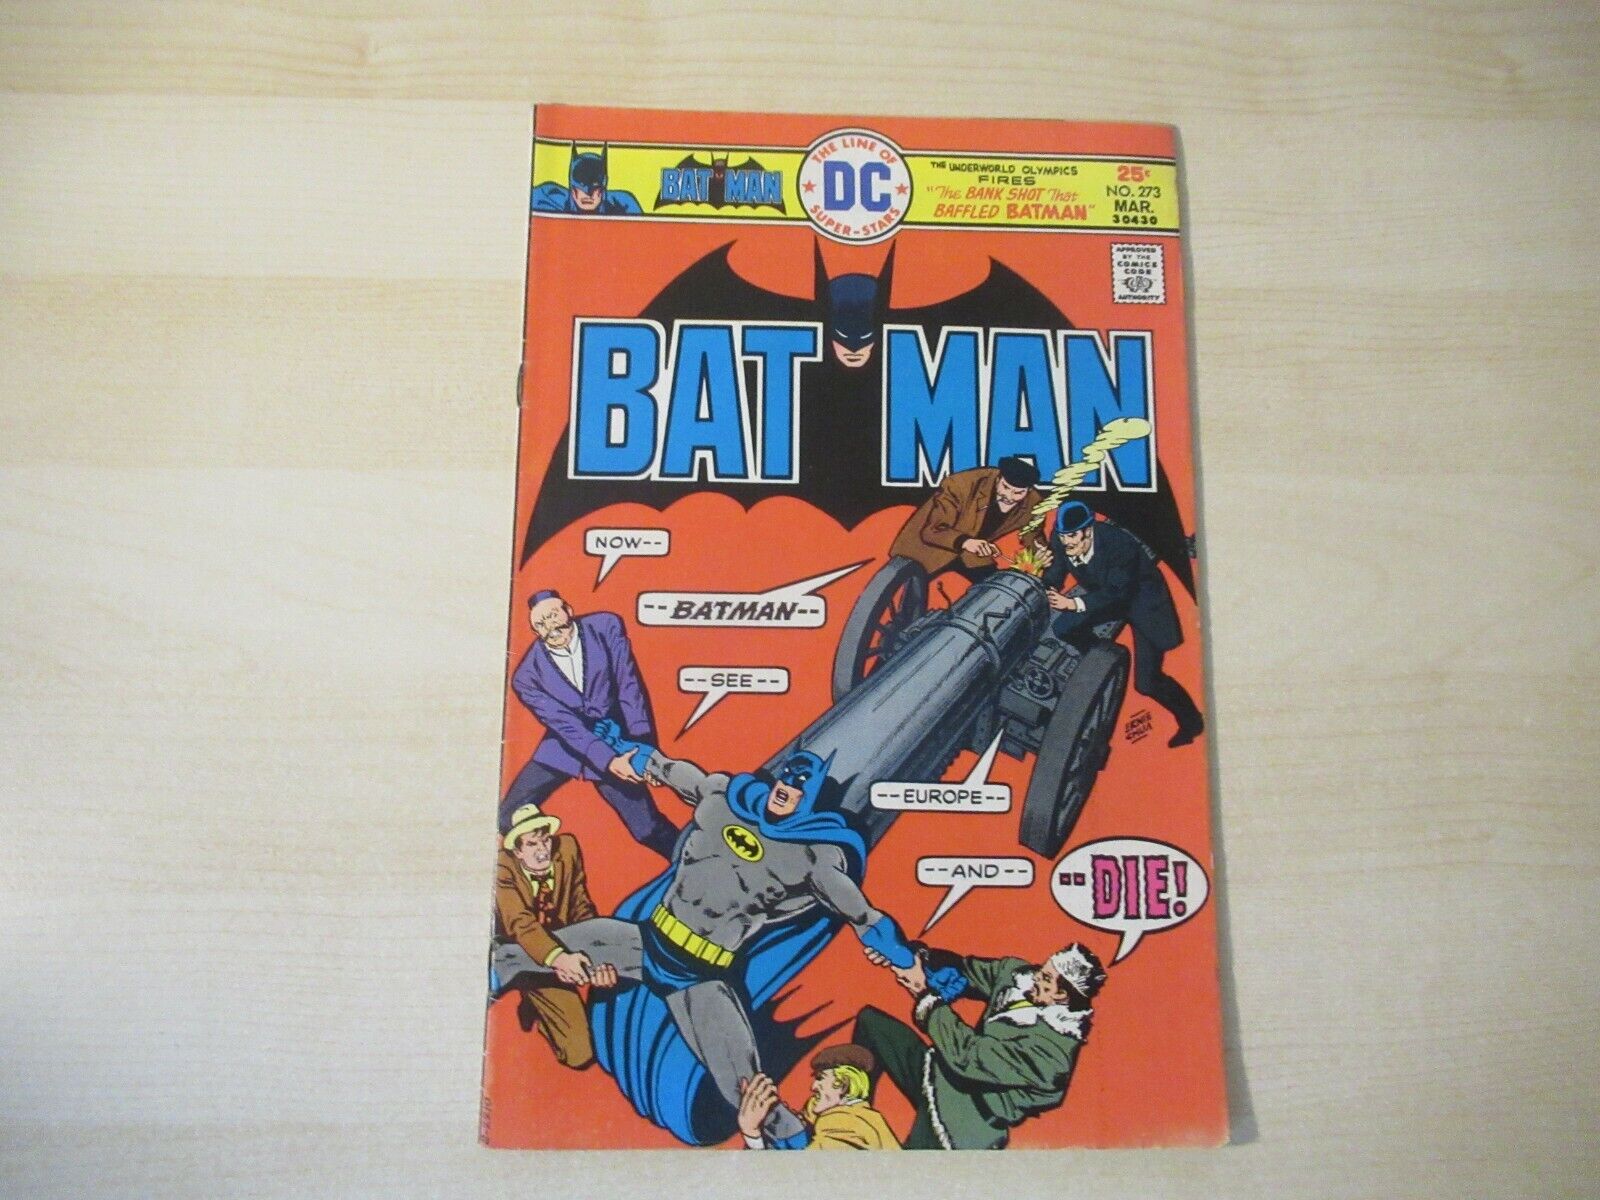 BATMAN #273 DC BRONZE AGE CANNON BATTLE COVER GREAT 1970'S COMIC